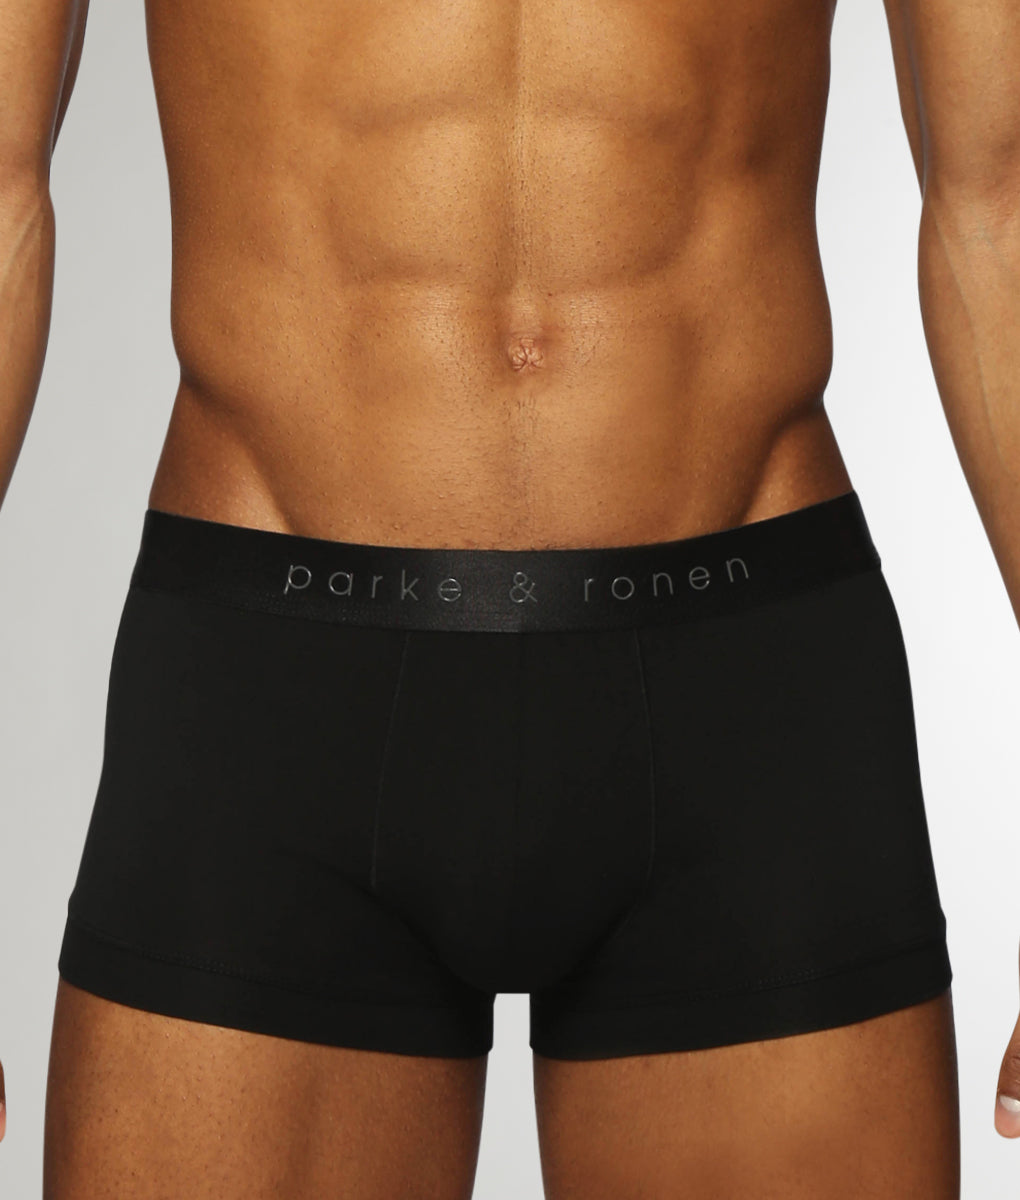 https://www.underwearexpert.com/cdn/shop/files/Parke_Ronen-Trunk-U104-SO-BLK-black-f.jpg?v=1697494538